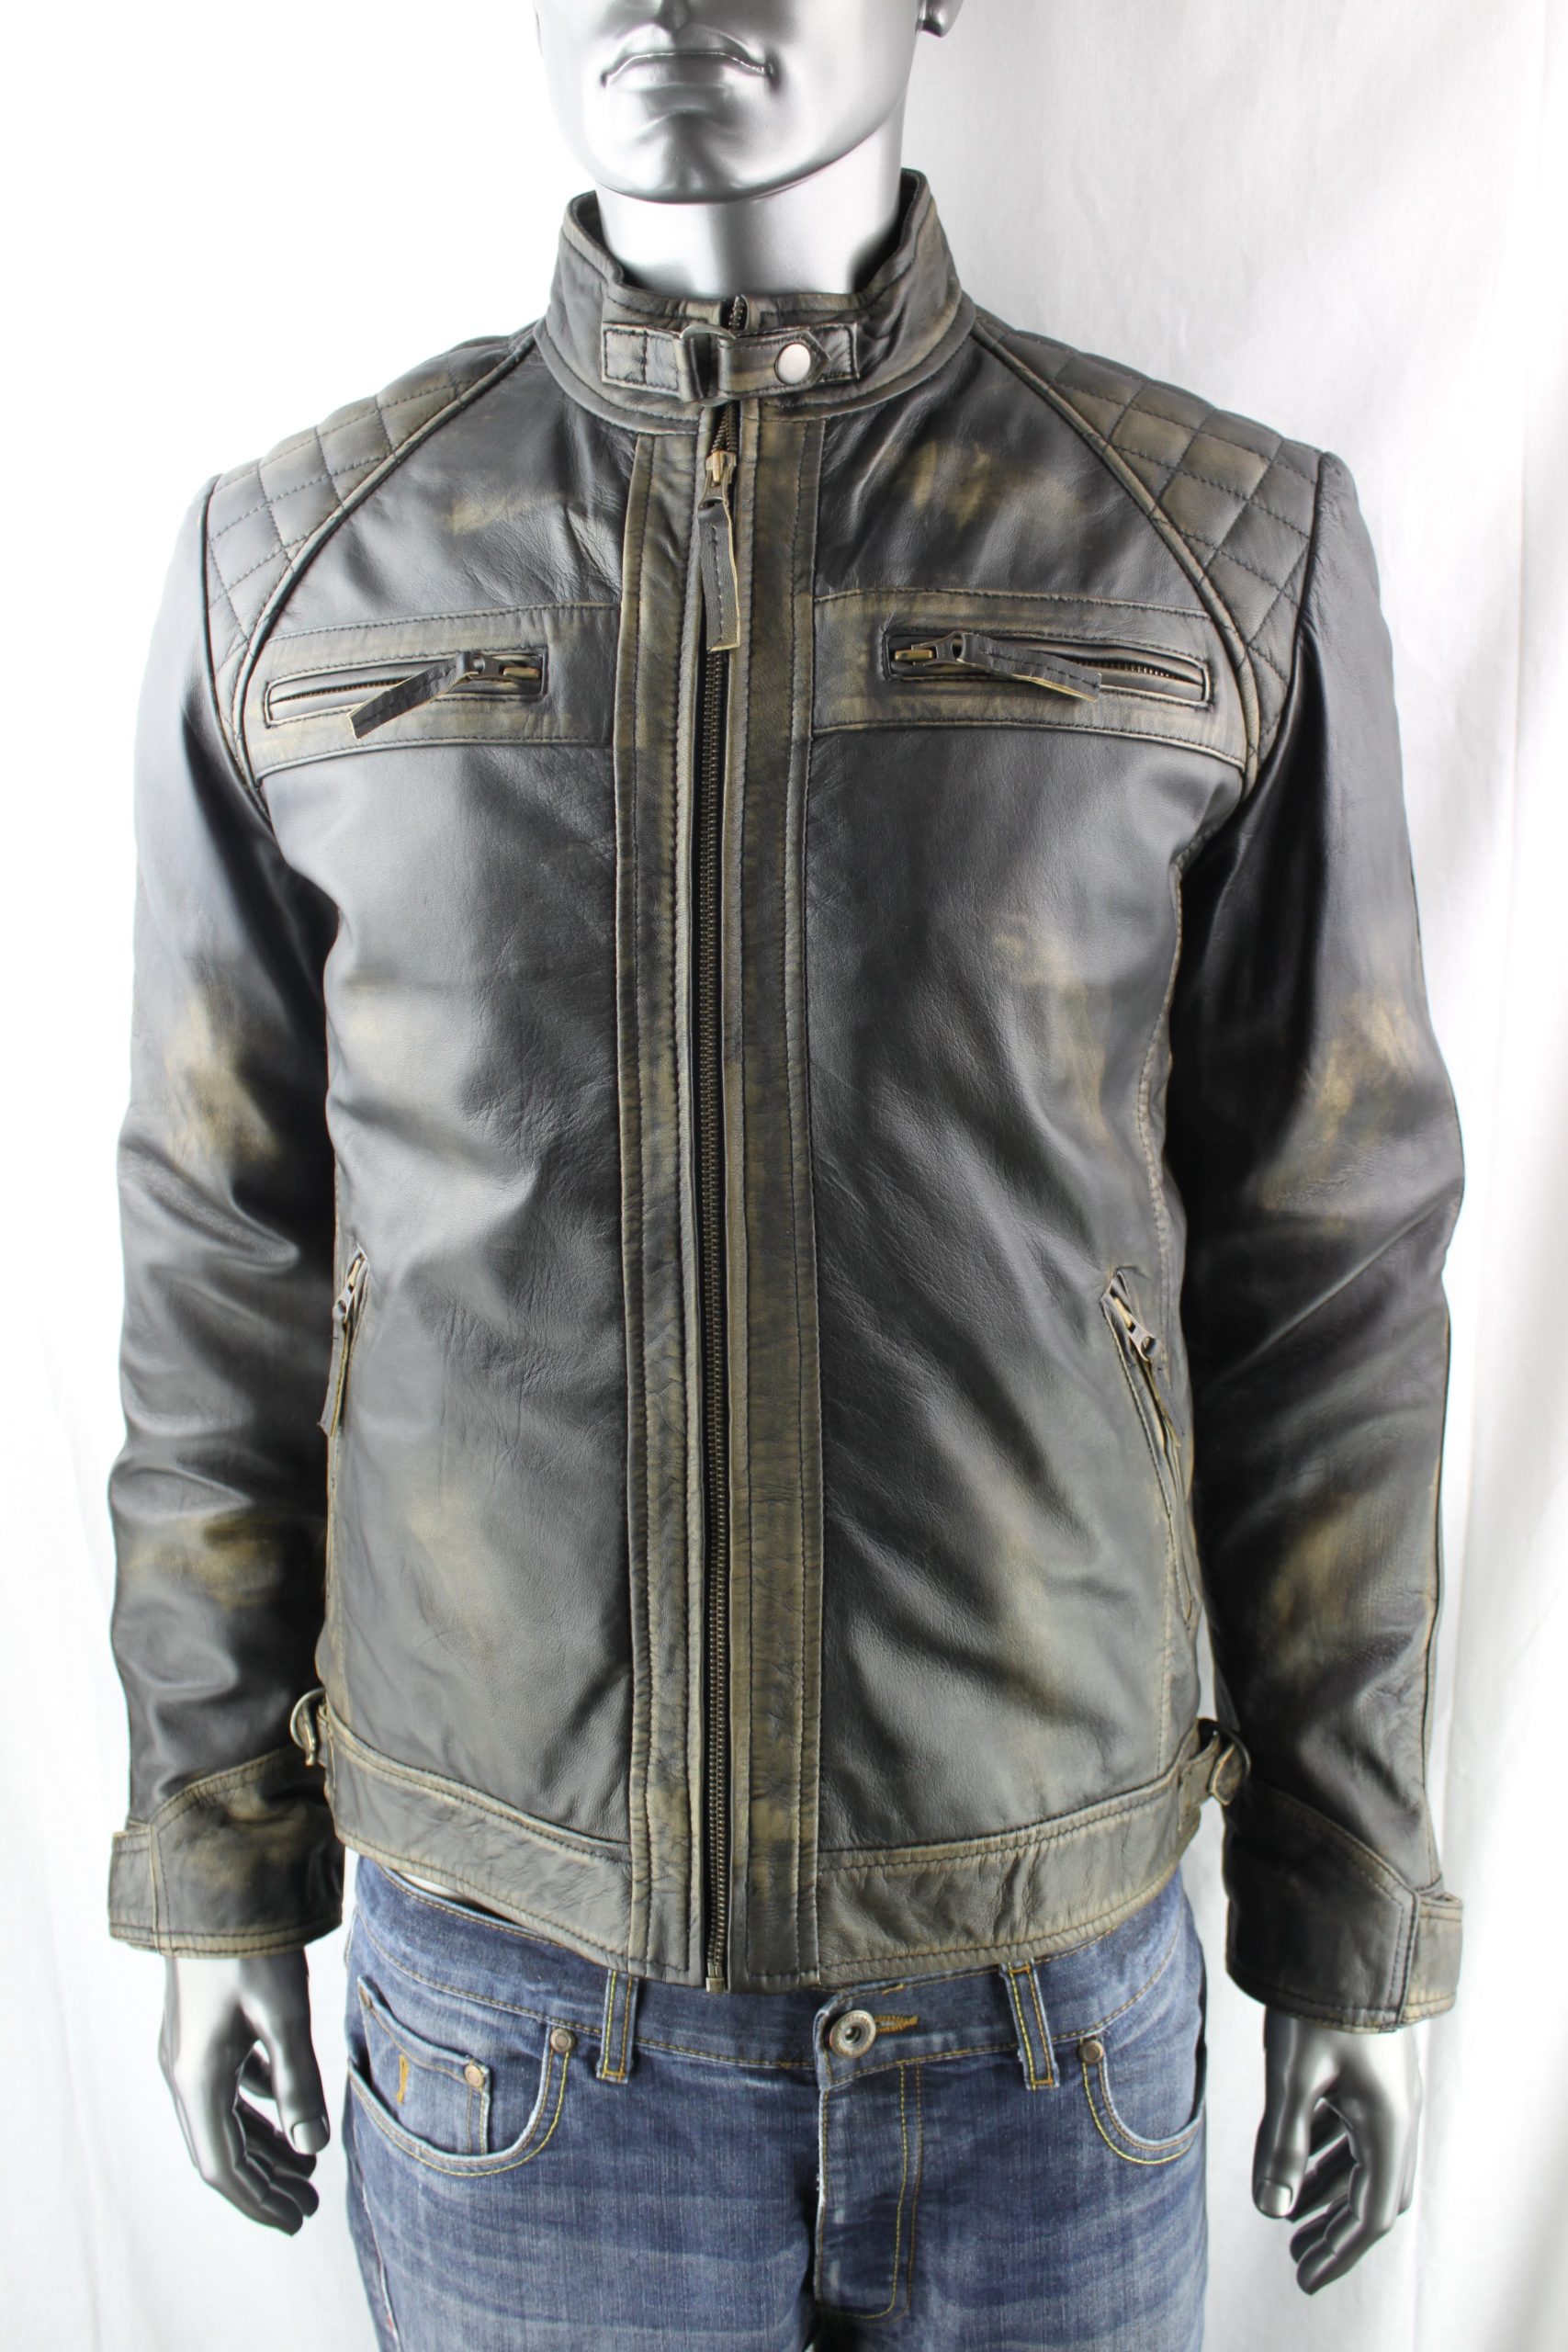 Men’s Vintage Leather Biker Jacket in Black Rub Off – Radford Leather